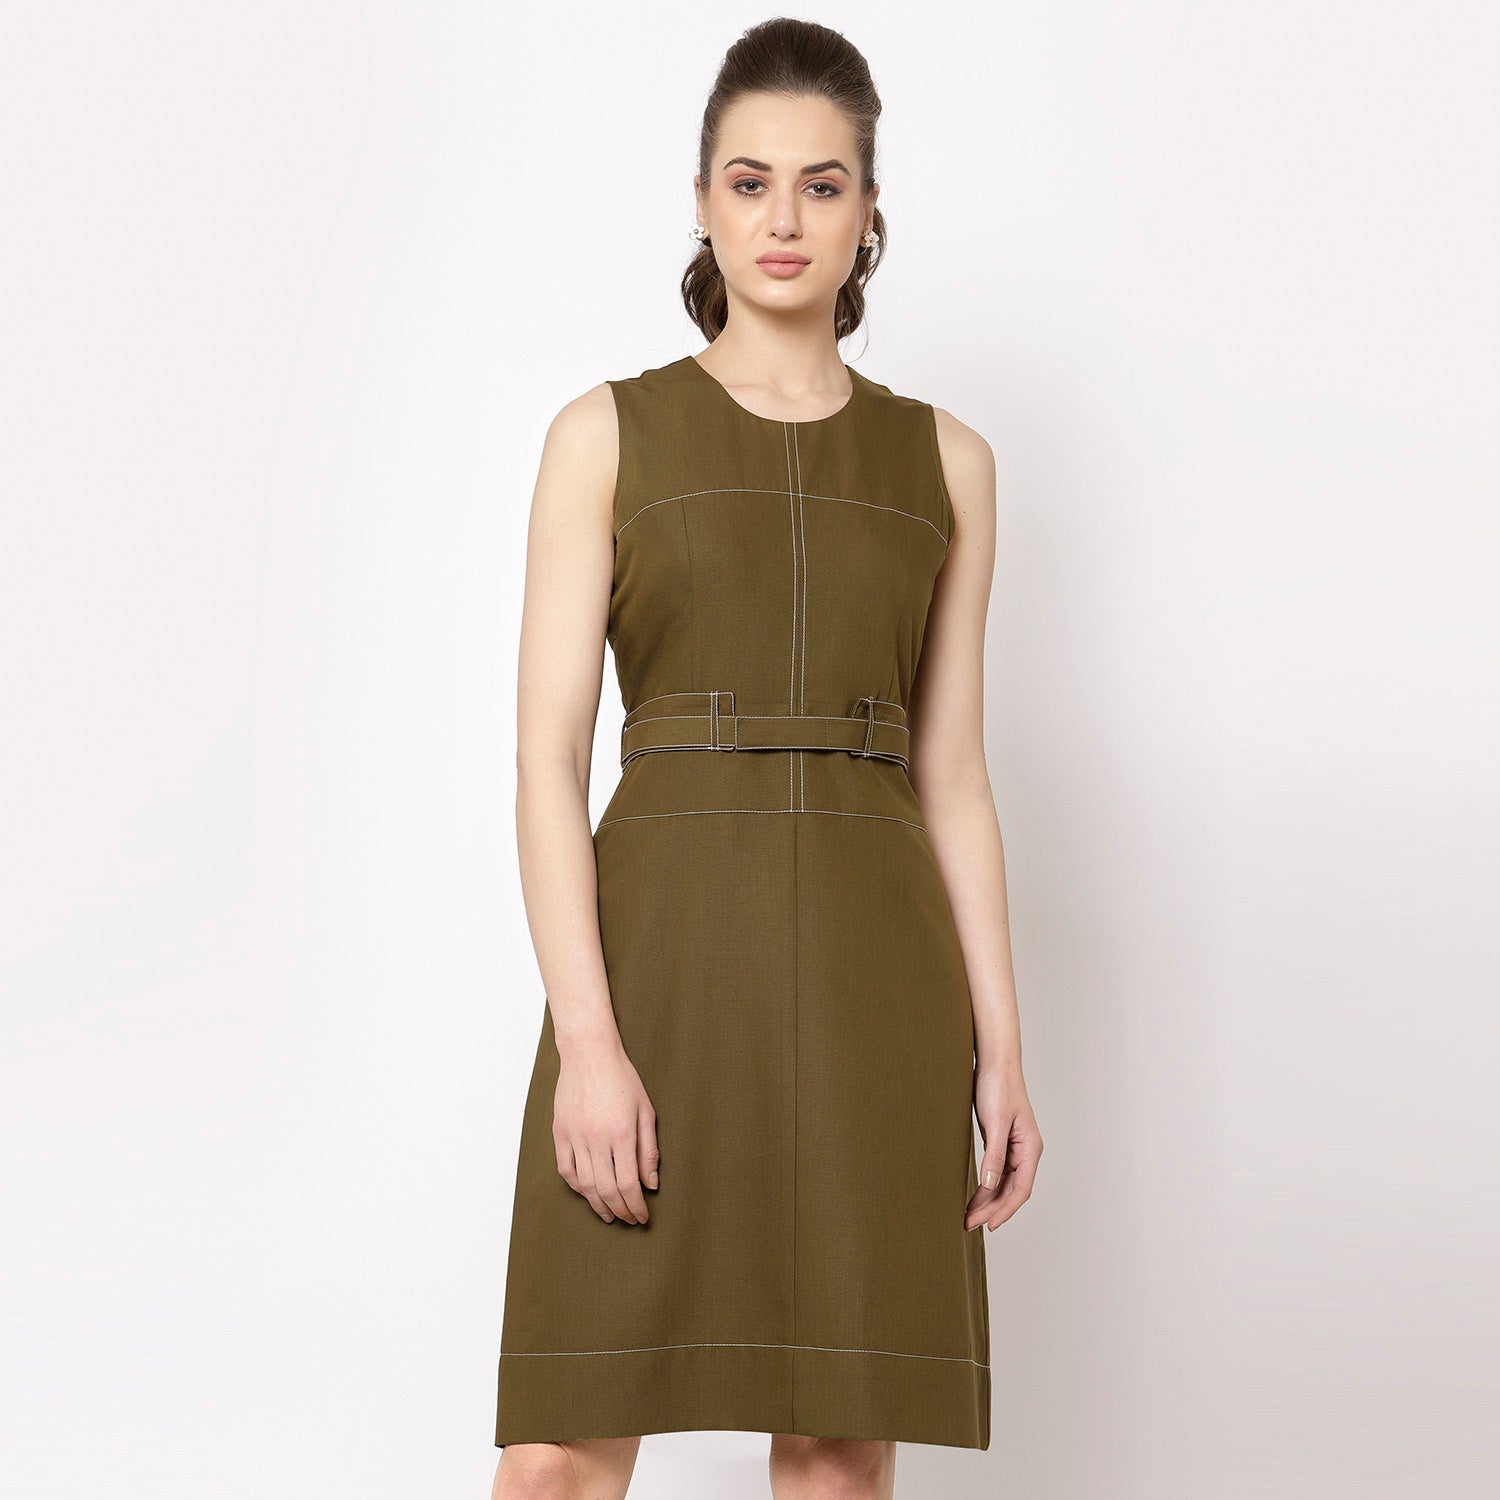 Olive sleeveless dress with belt